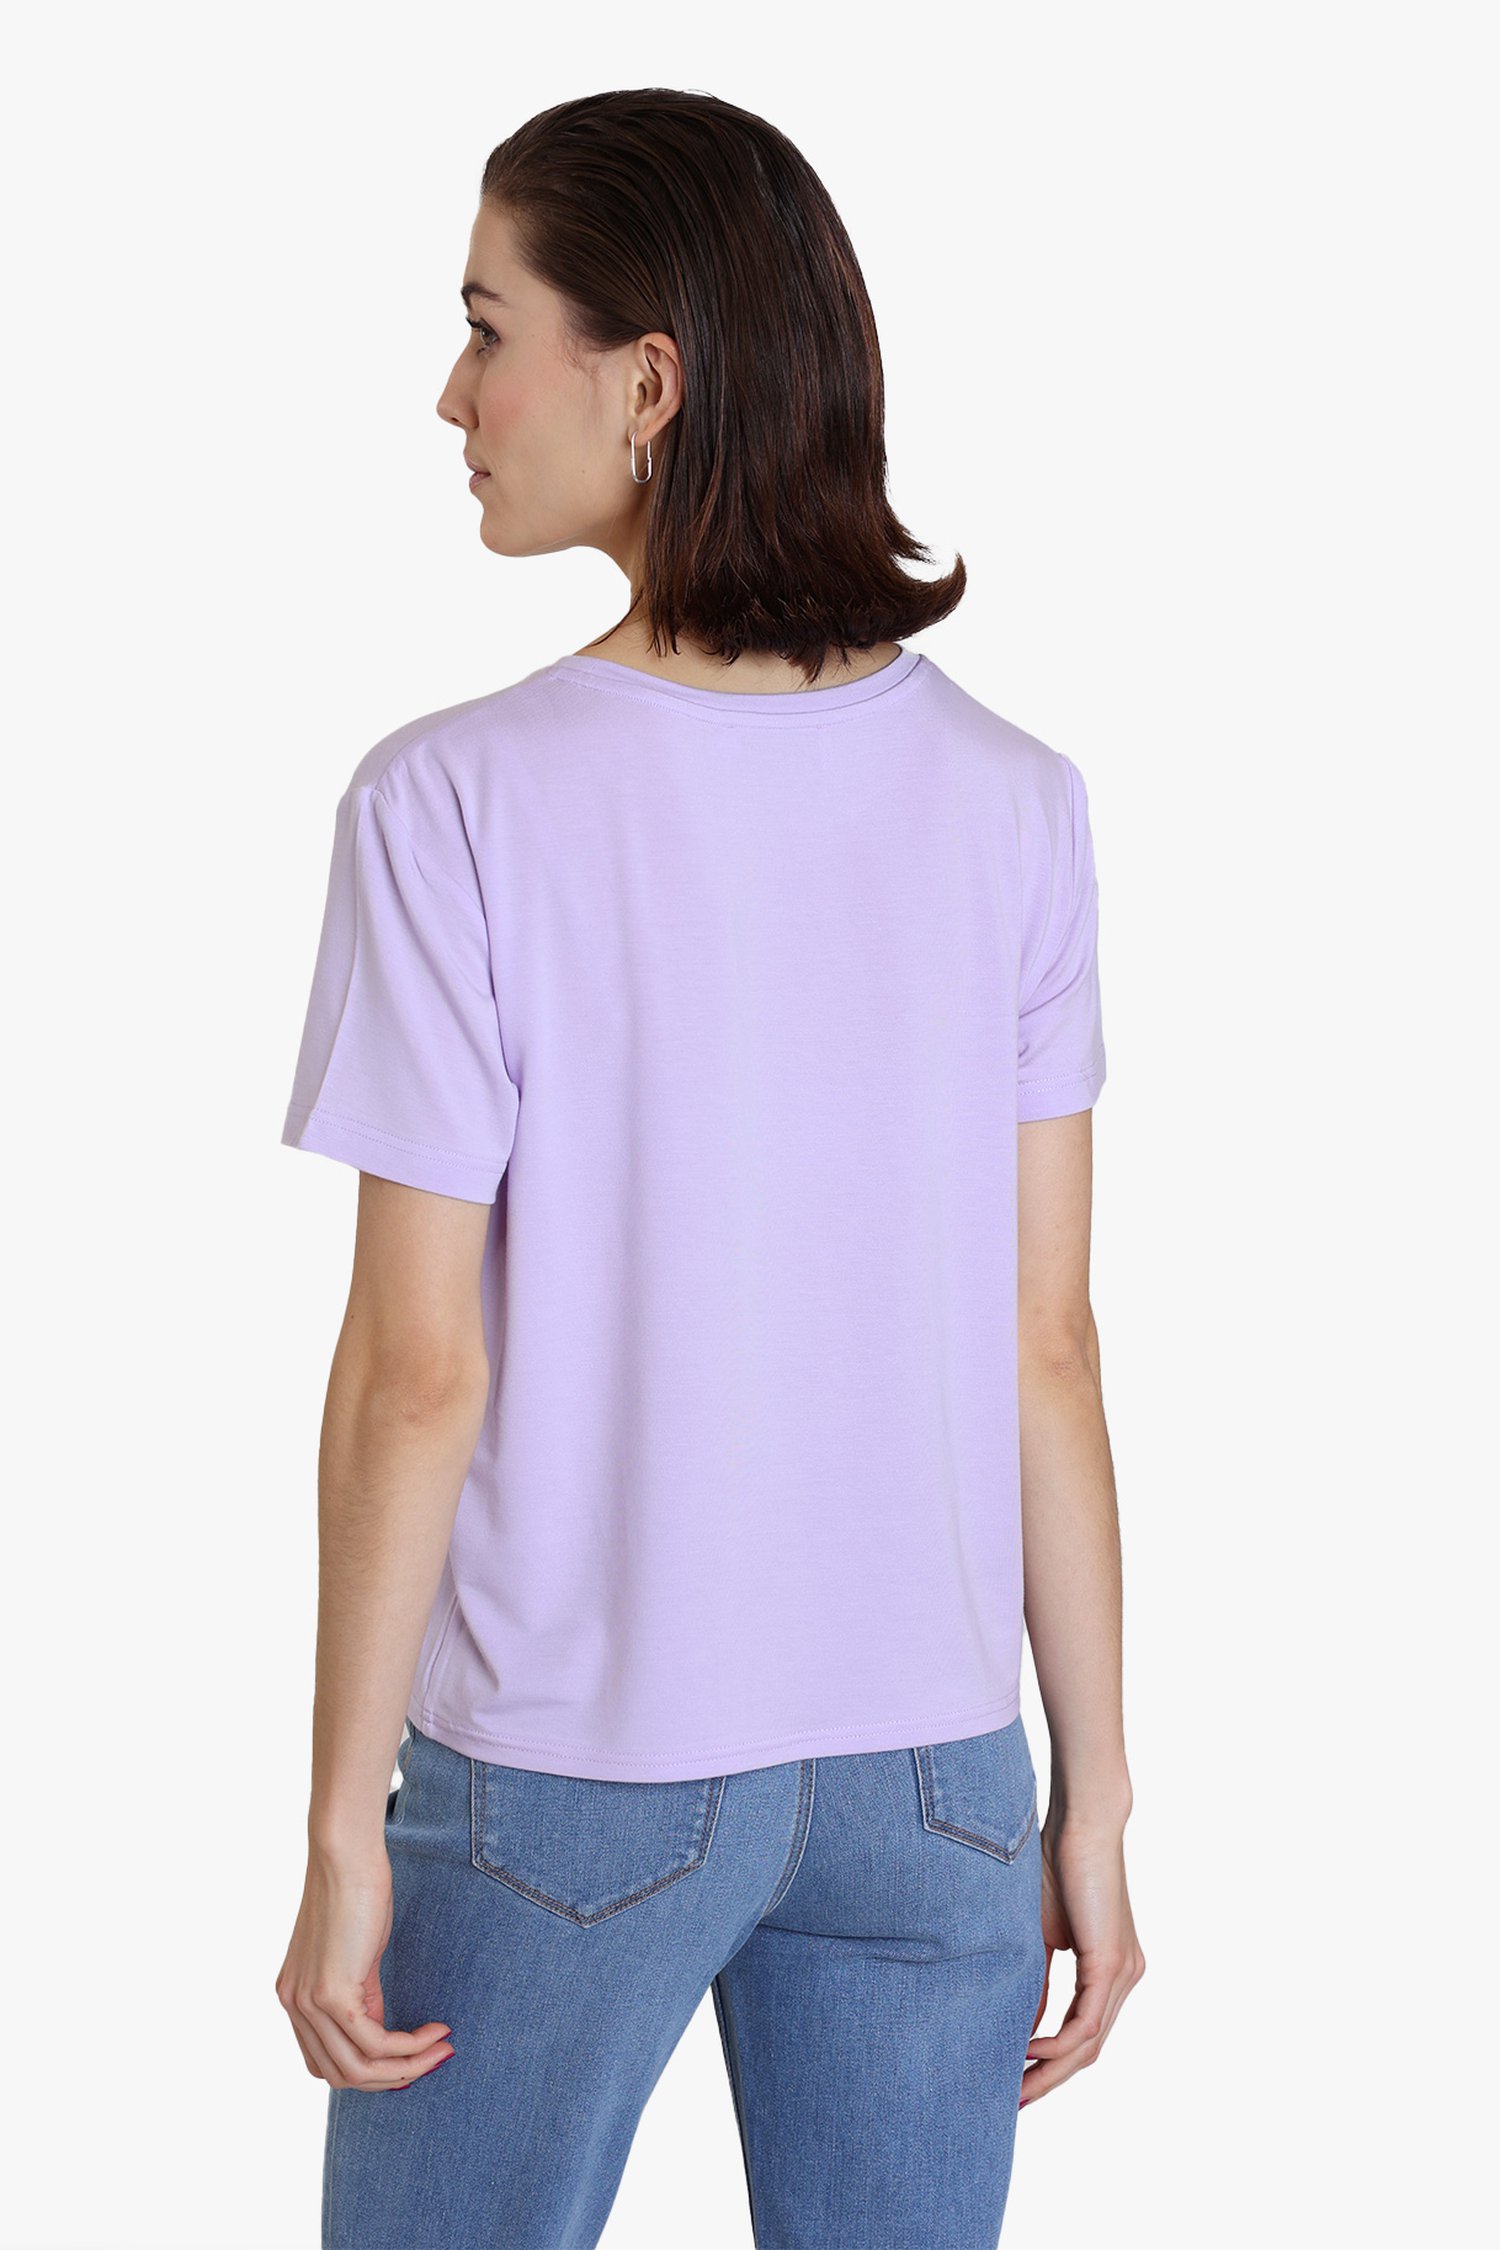 Louise | T-shirt van Lila 5995307 | e5